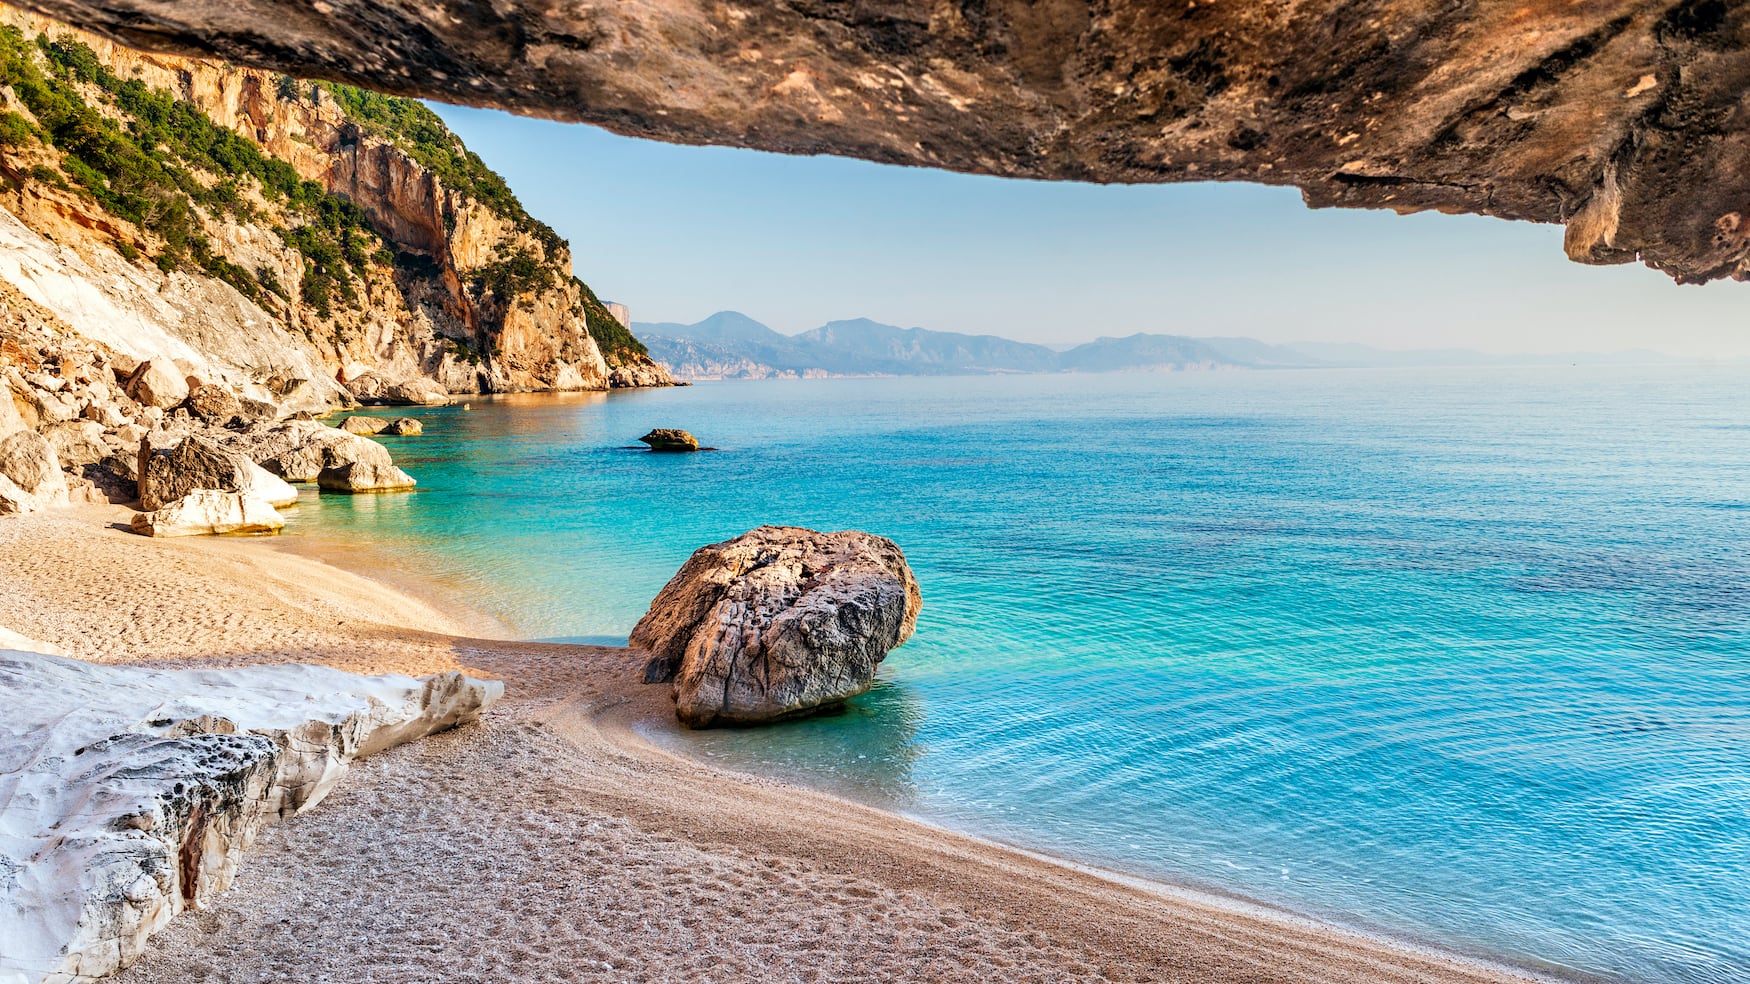 Cala Goloritzé auf Sardinien, einer der schönsten versteckten Strände weltweit